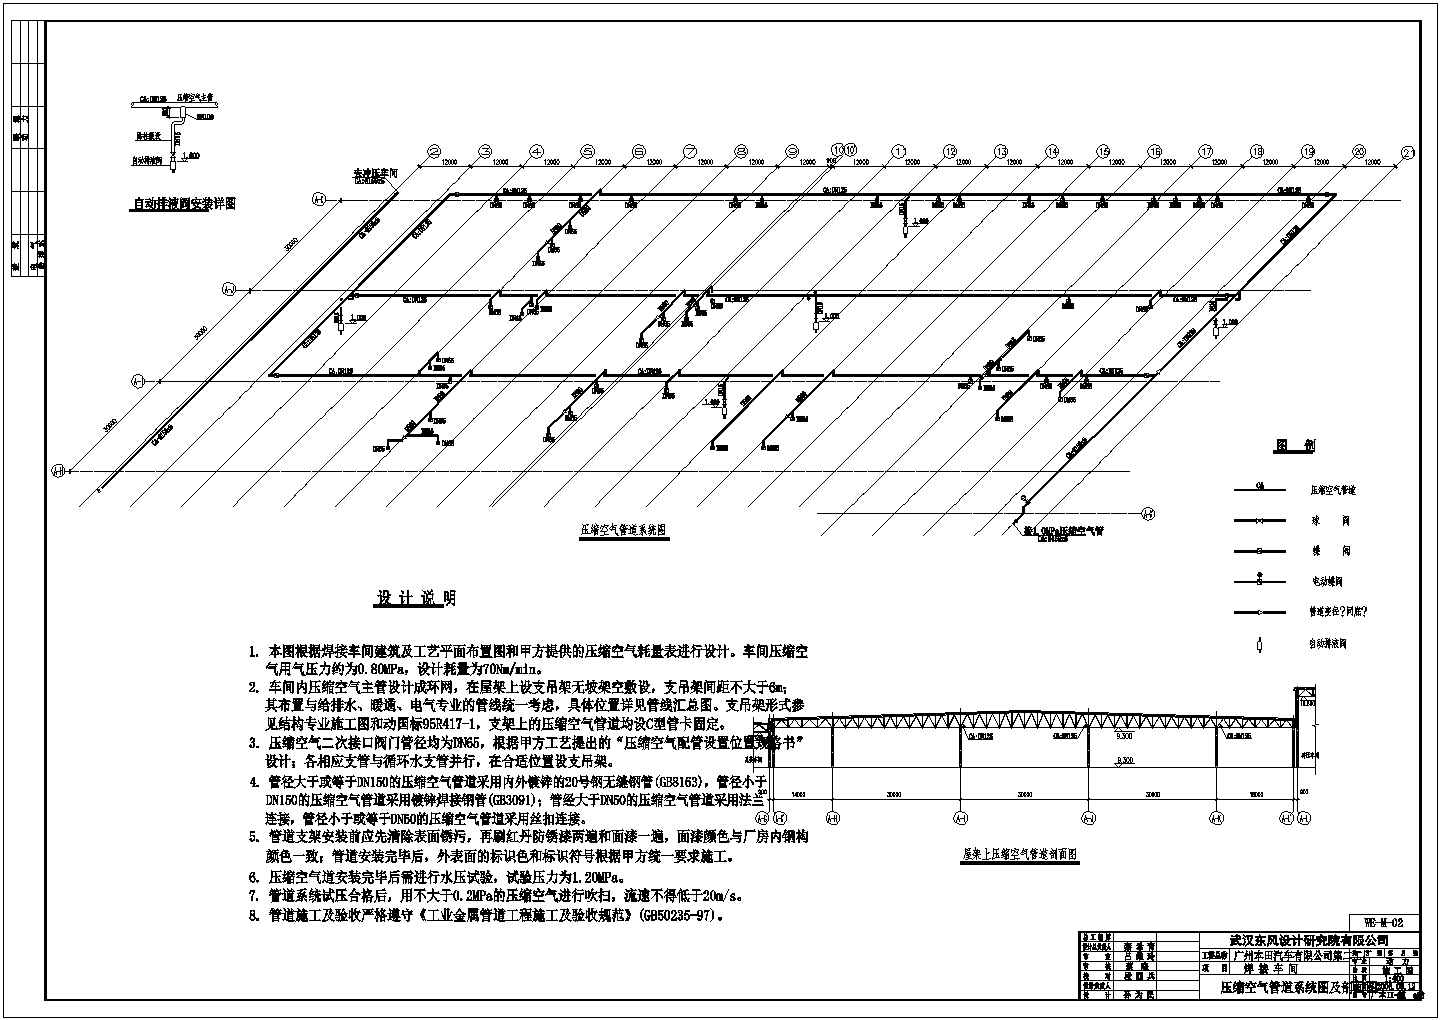 【广州】某汽车工厂焊接车间全套机电安装施工图